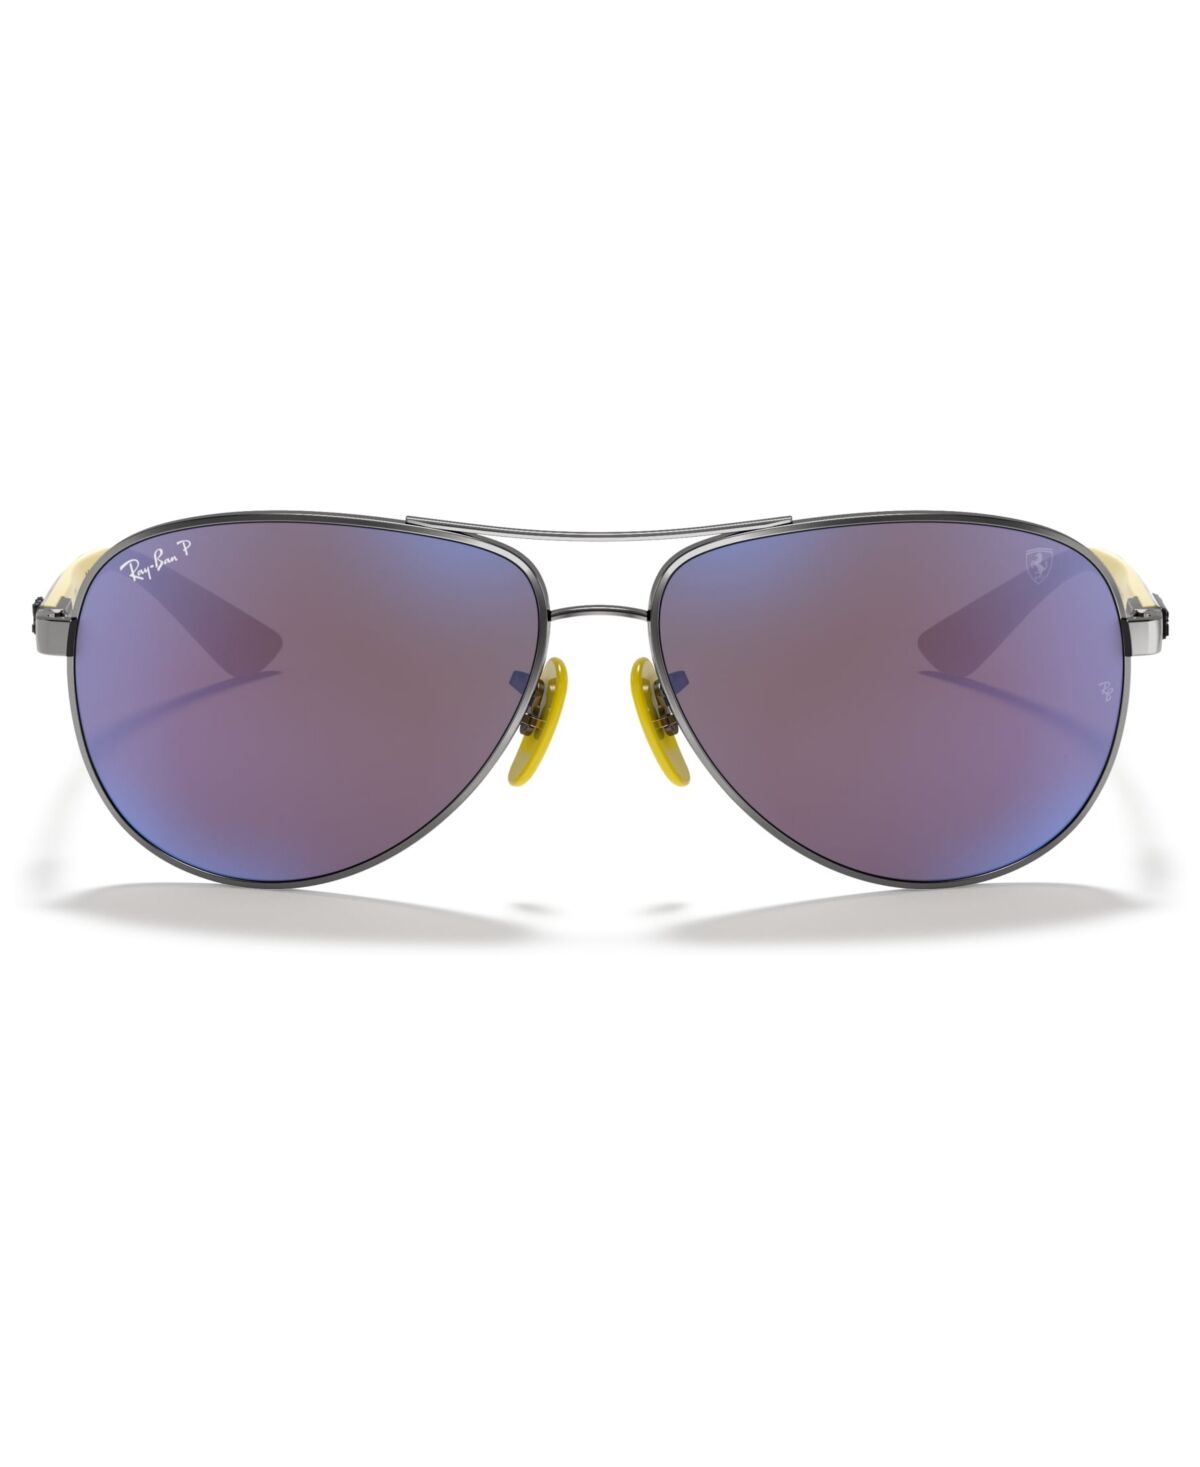 Ray-Ban Men's Polarized Sunglasses, RB8313M Scuderia Ferrari Collection 61 - GUNMETAL